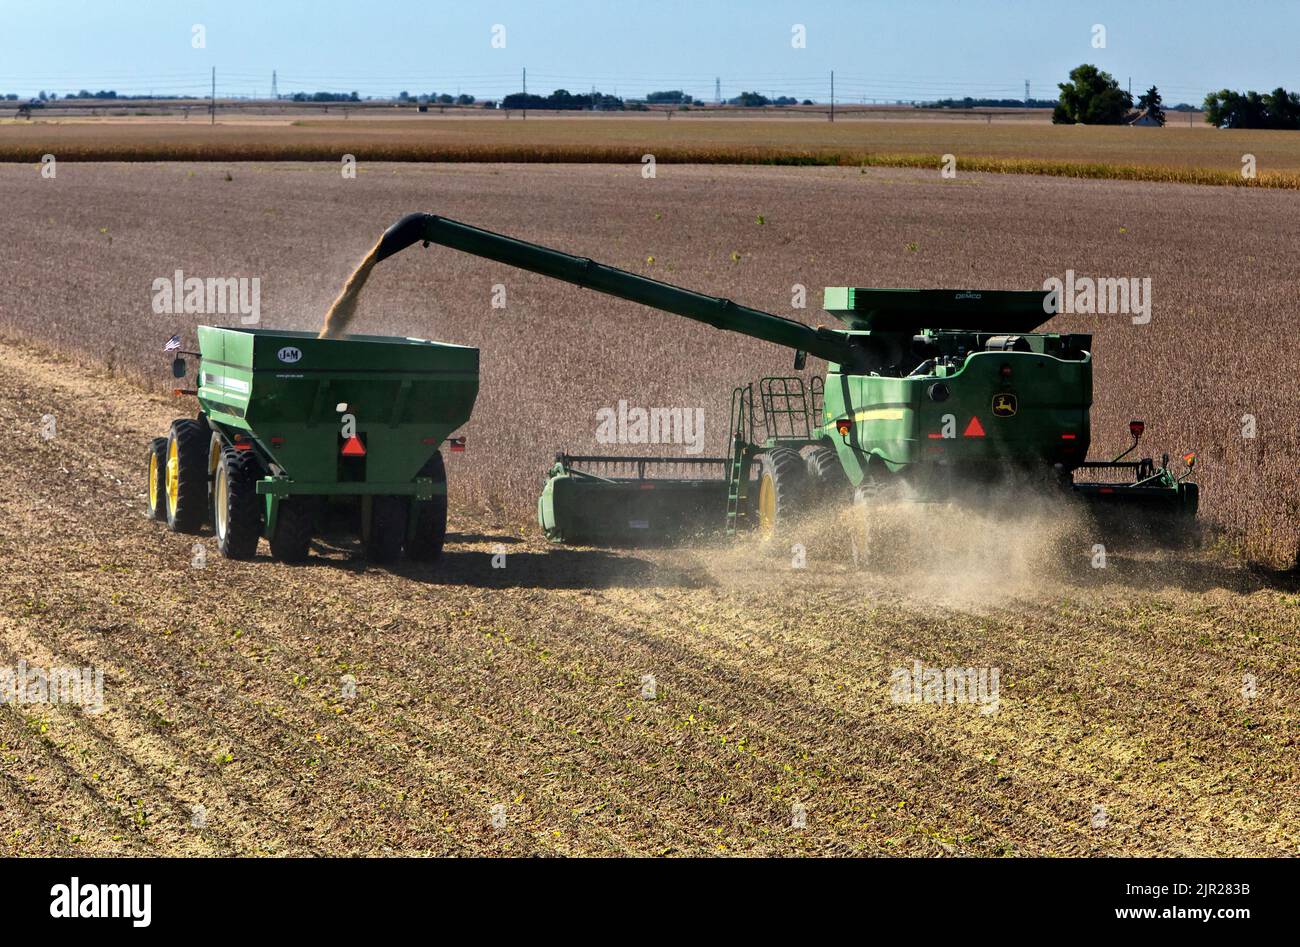 Récolte de soja, récolteuse John Deere, tracteur manœuvrant le chariot de remblai J&M, récolte de soja mûr 'Glycine max'. Banque D'Images